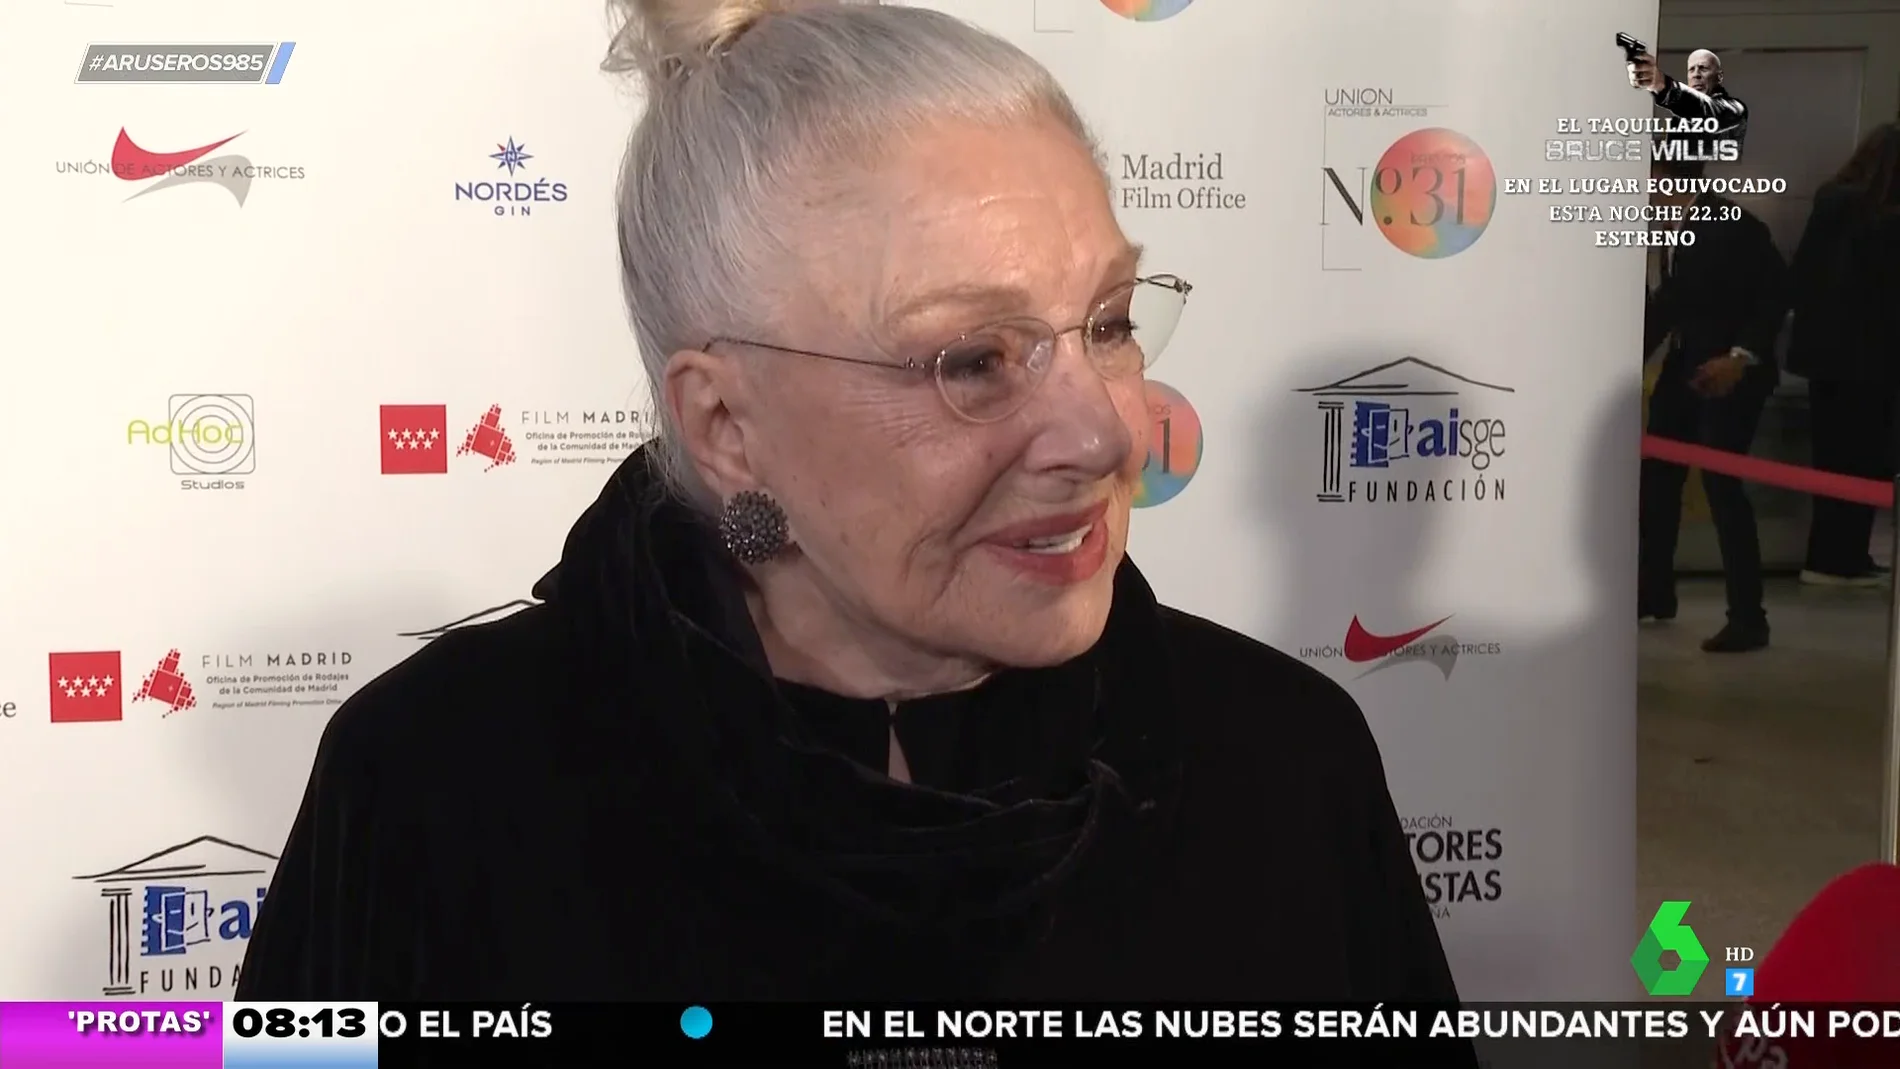 Lola Herrera recibe el premio 'Toda una vida' a sus 87 años: "Yo sigo aquí y hasta donde llegue"